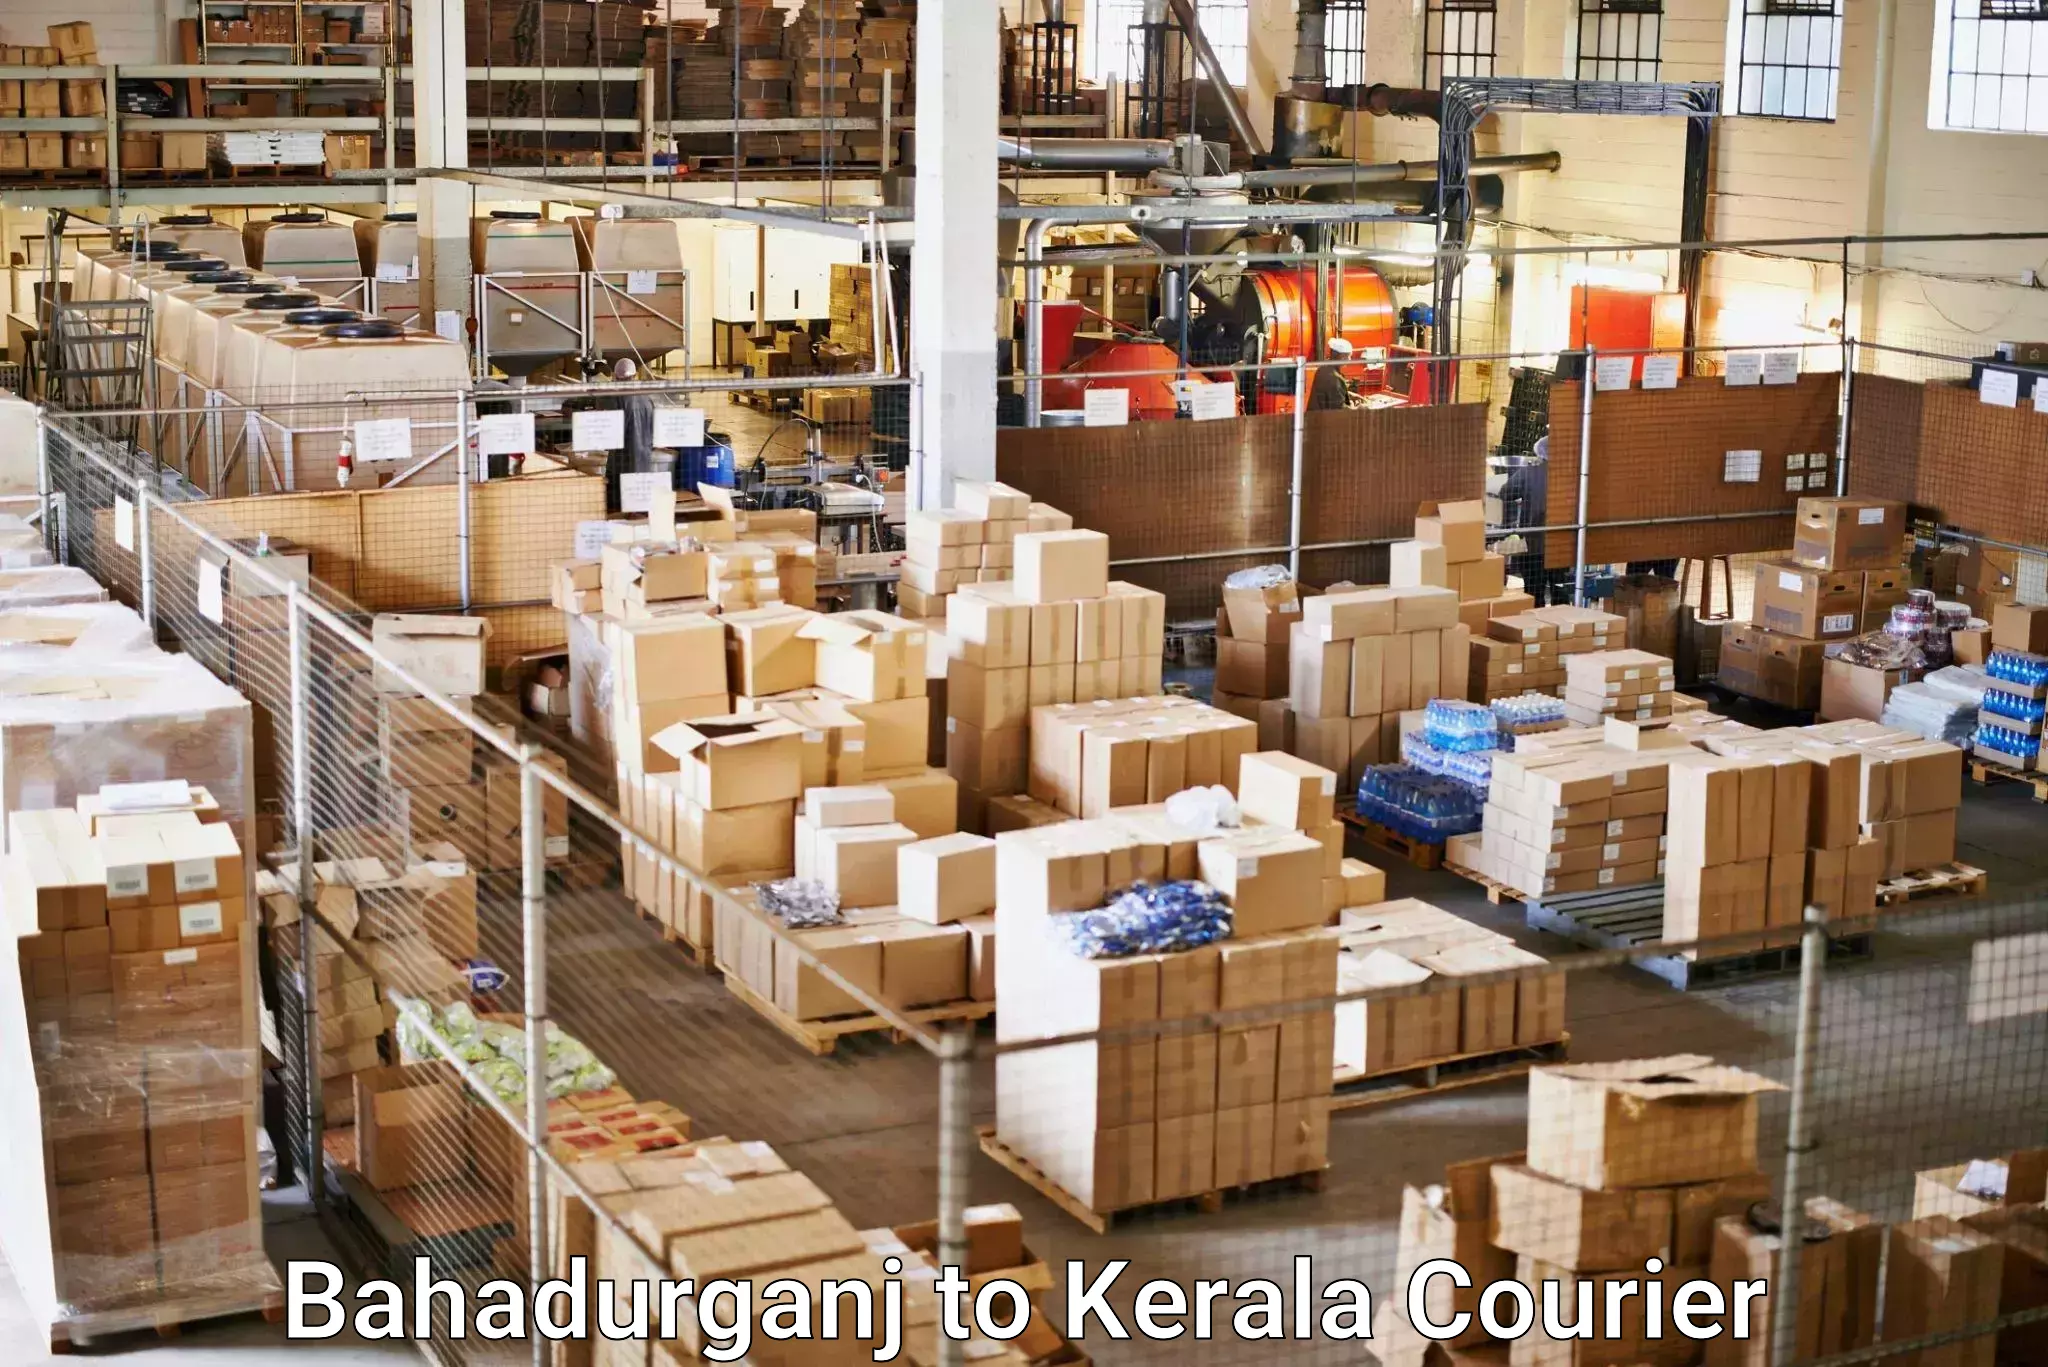 Business shipping needs Bahadurganj to Olavakkot